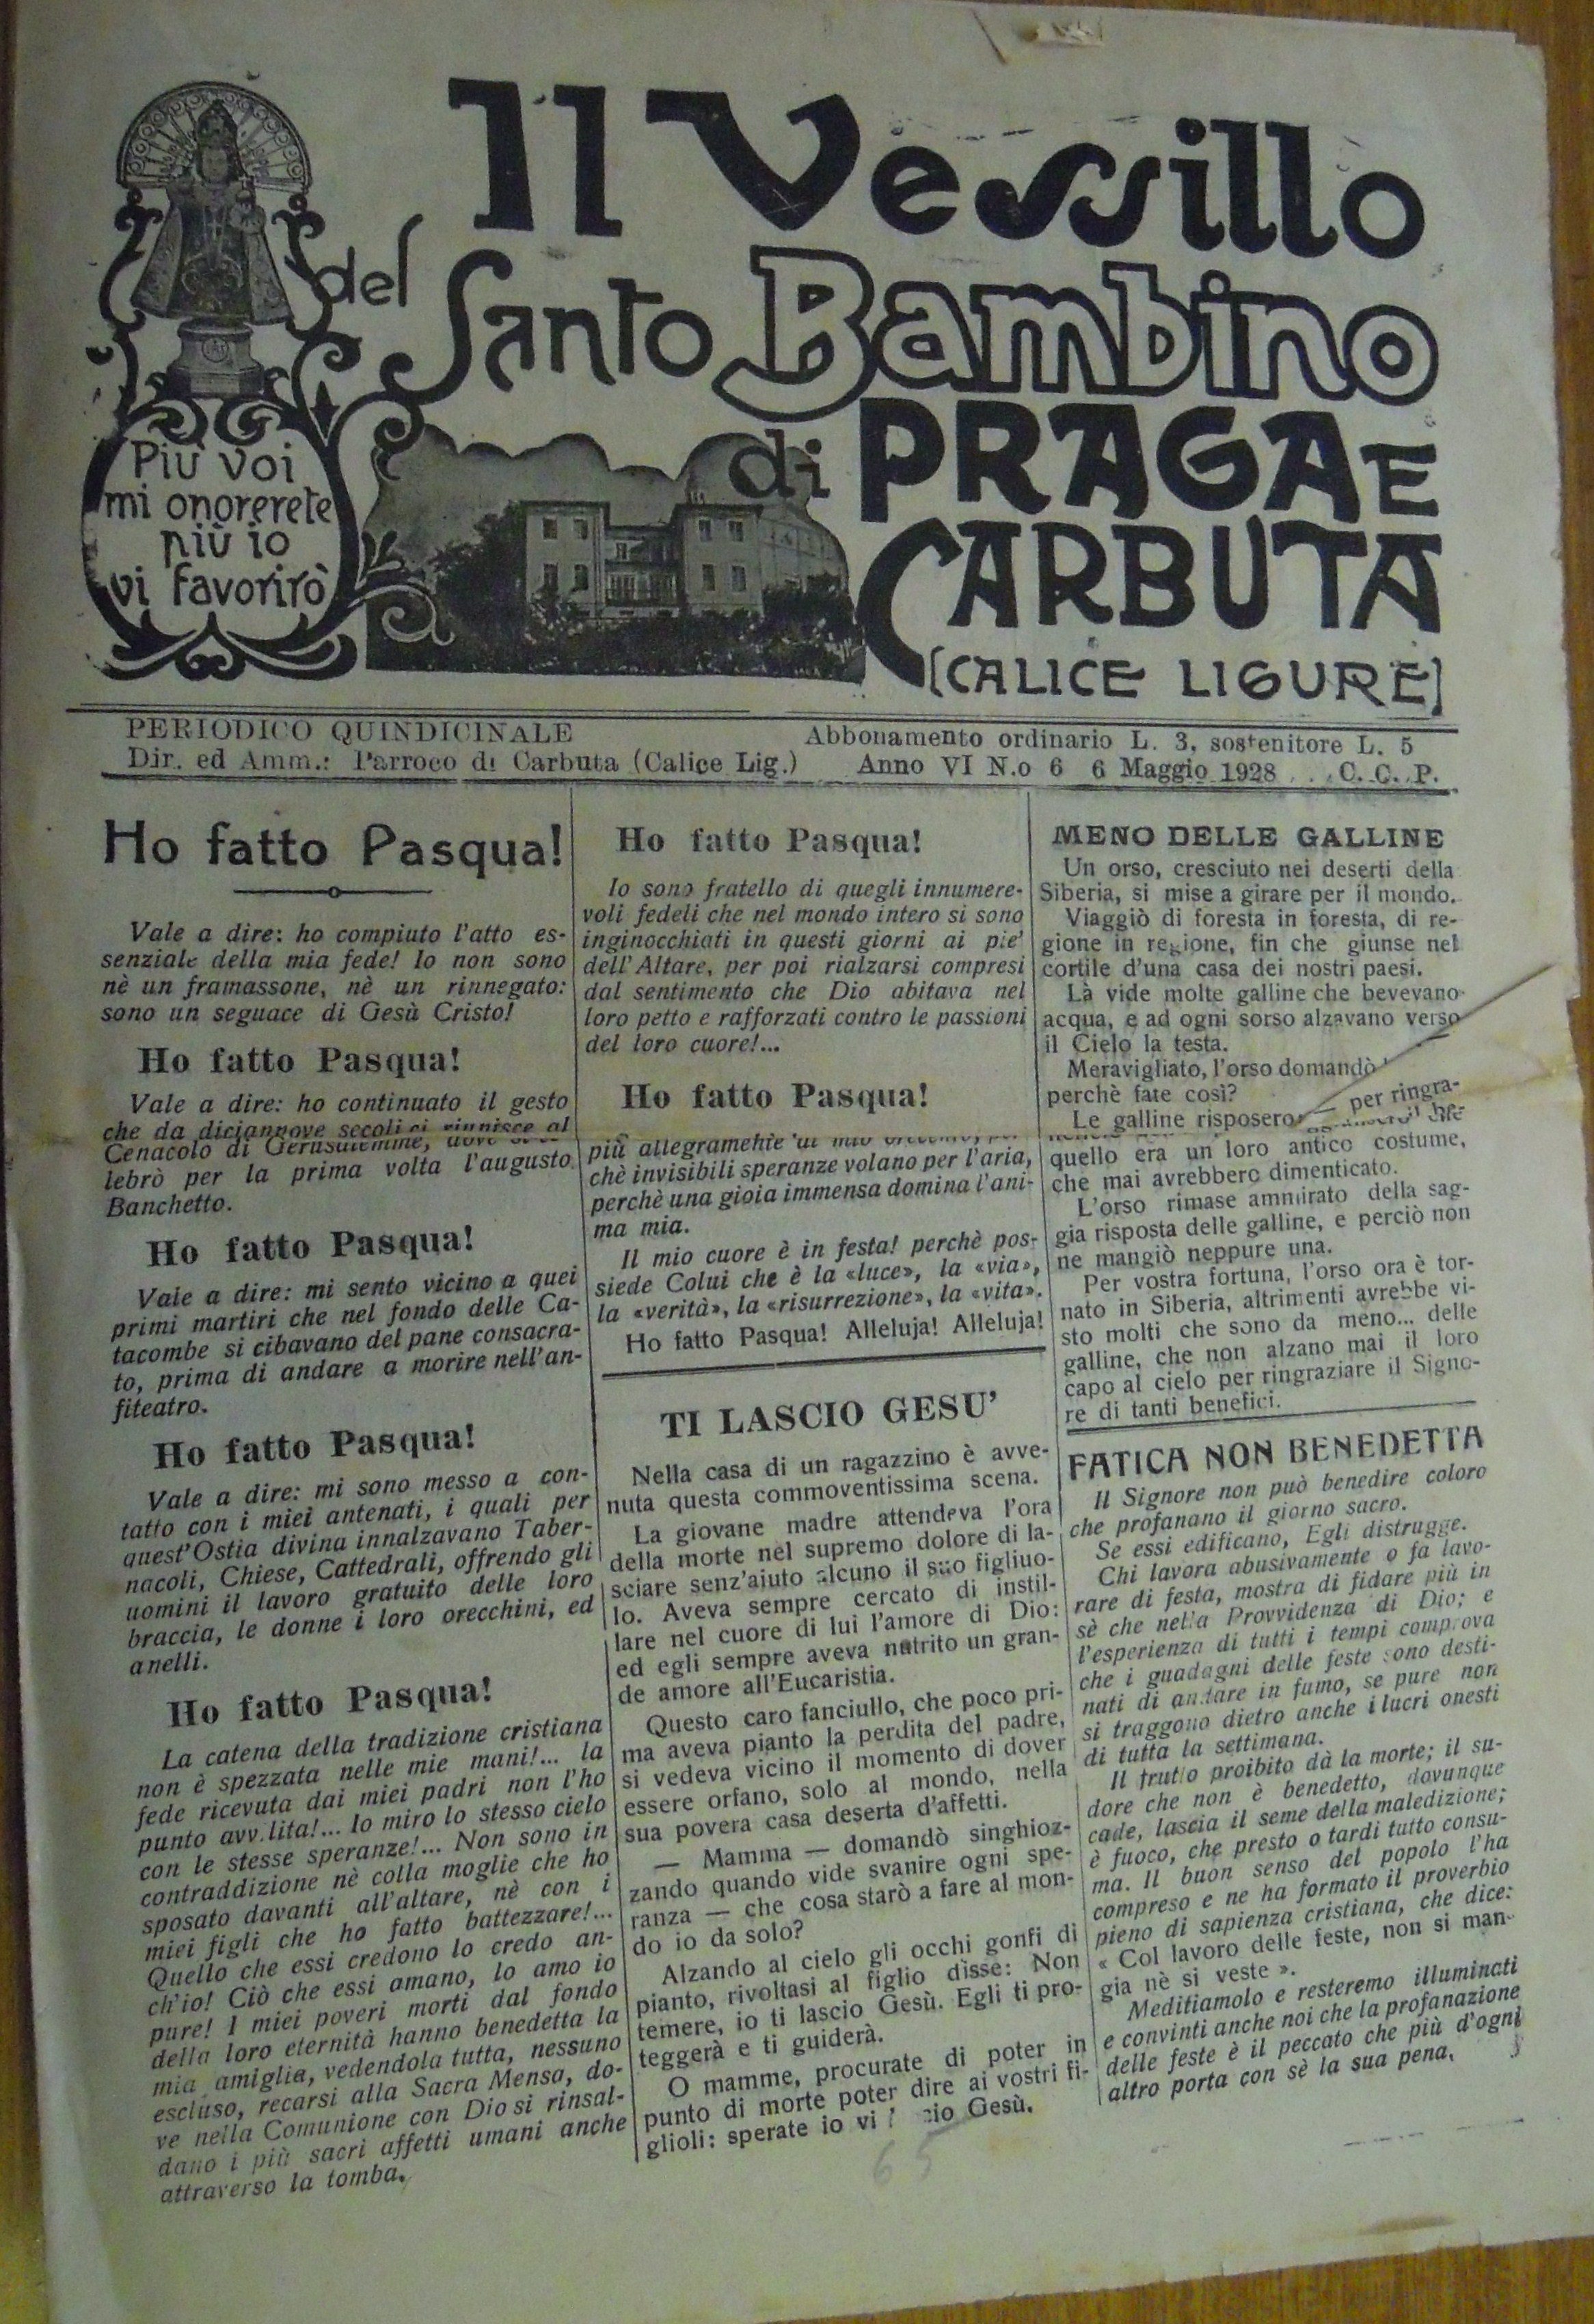 Carbuta - Santo Bambino di Praga: giornale2